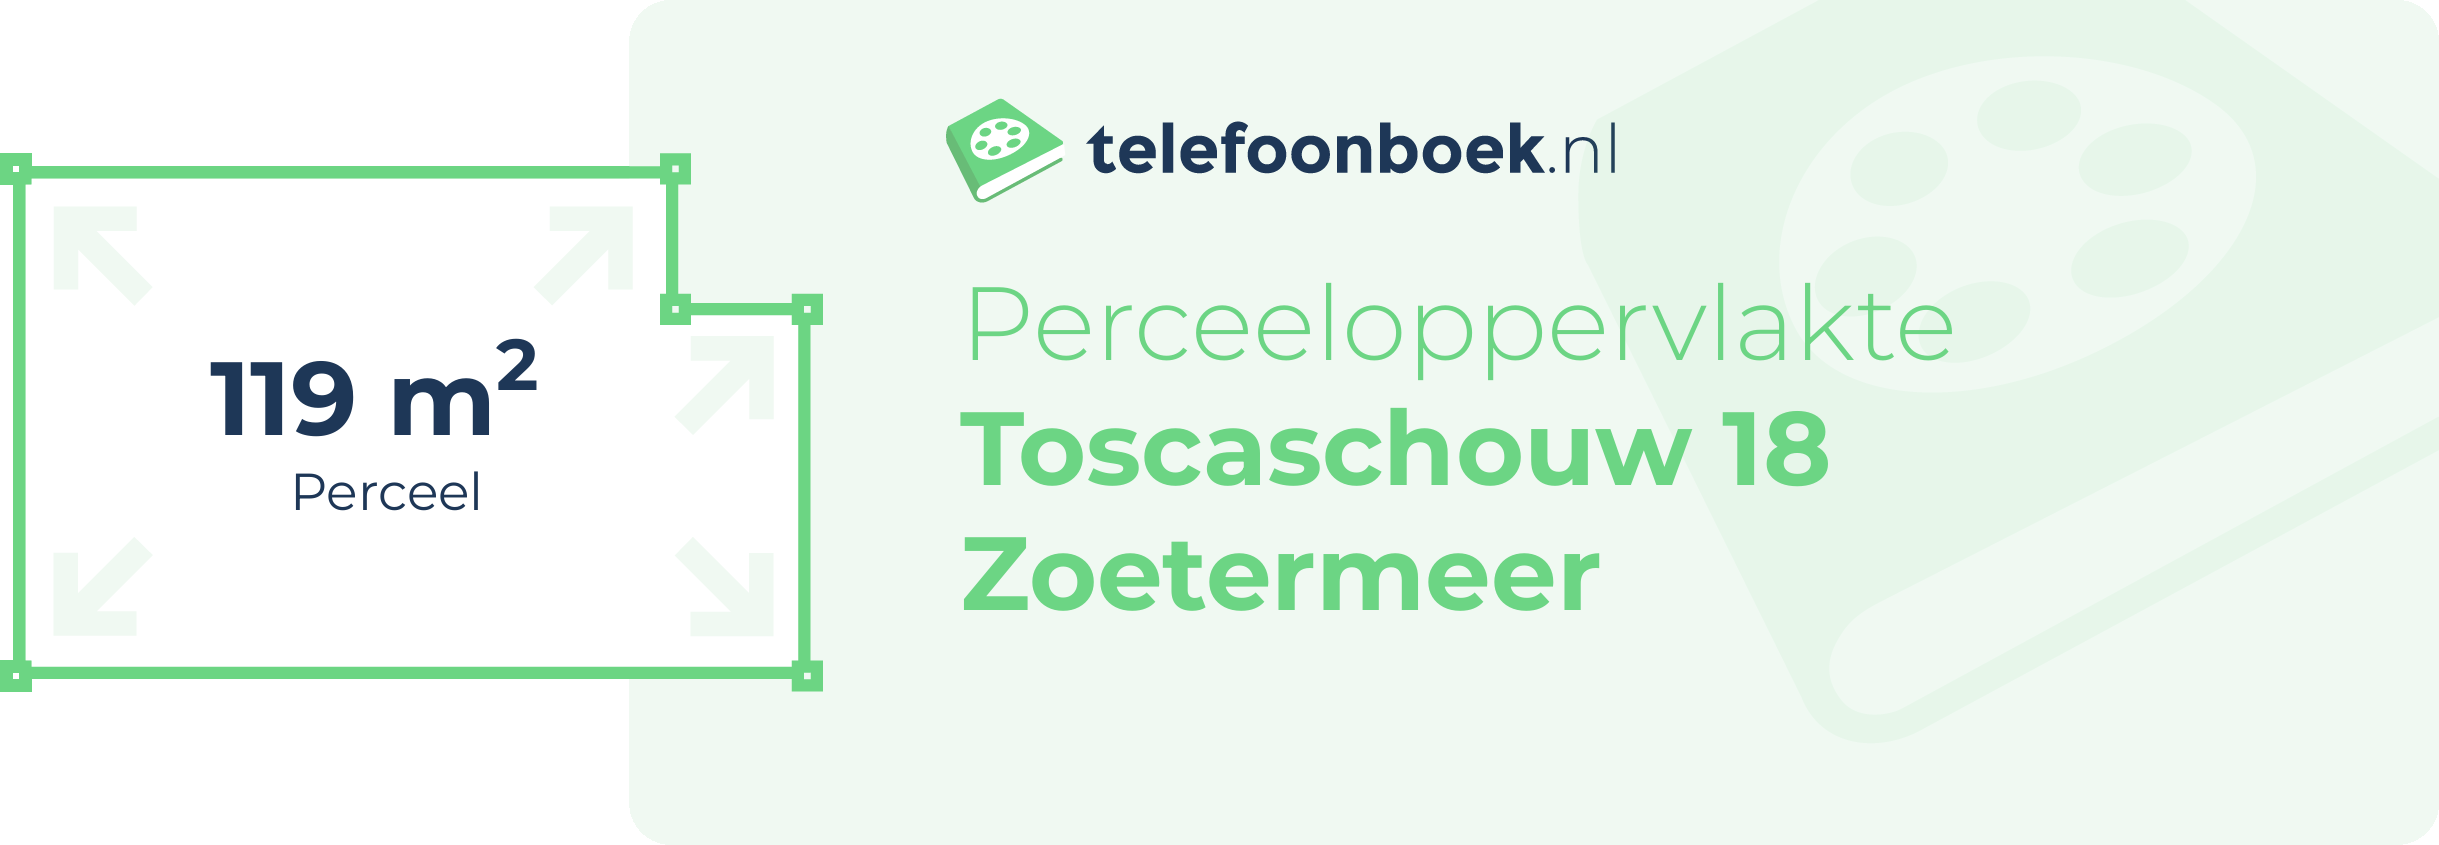 Perceeloppervlakte Toscaschouw 18 Zoetermeer